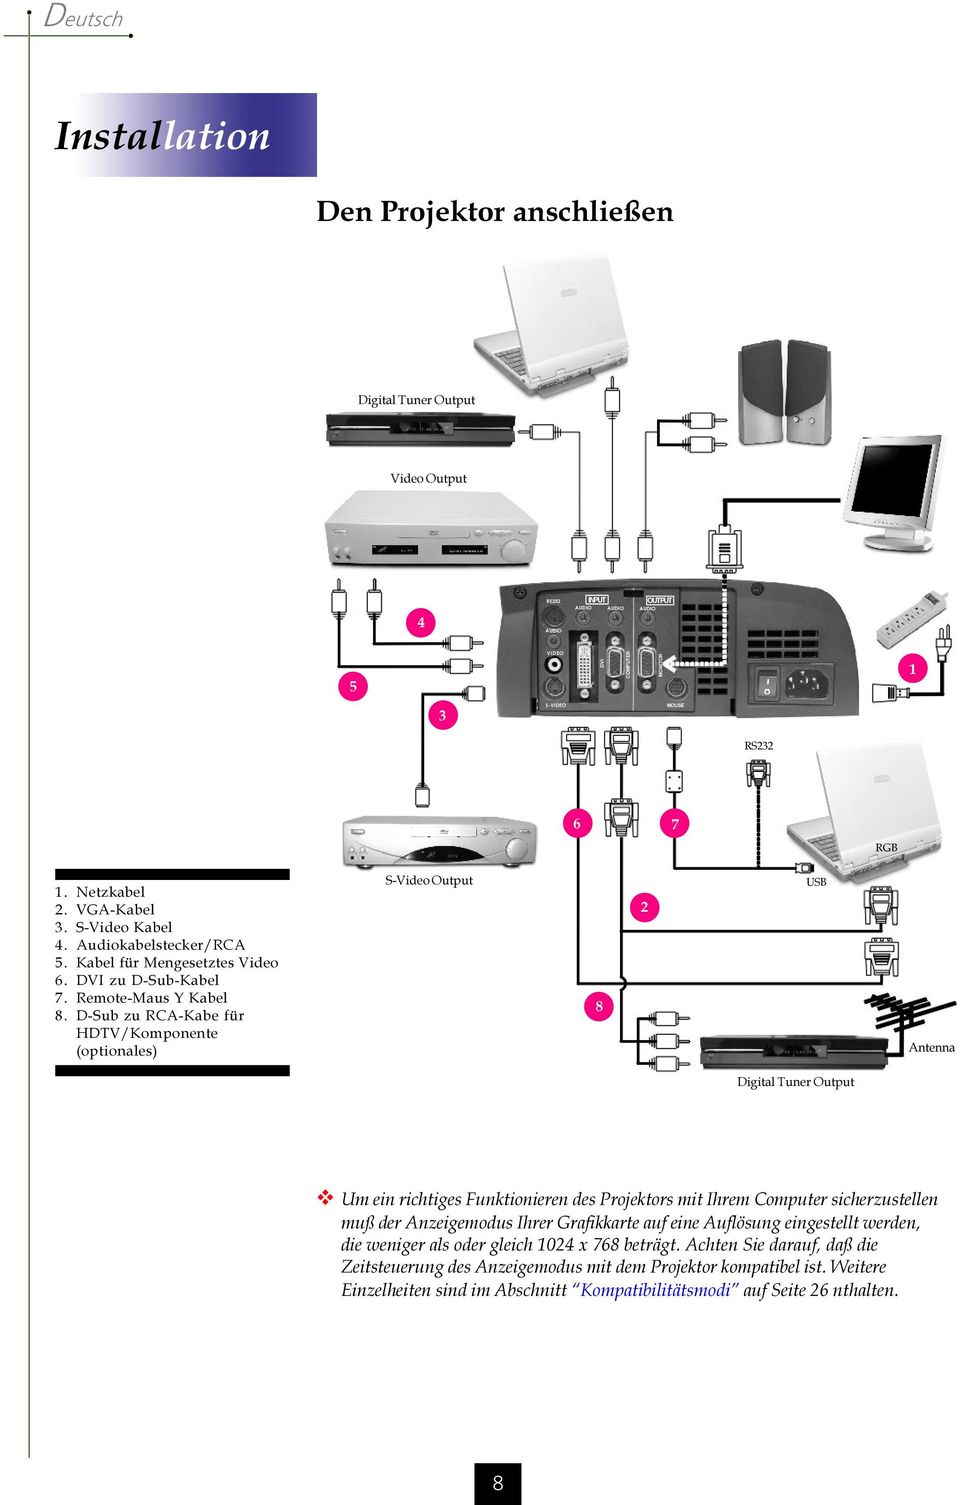 D-Sub zu RCA-Kabe für HDTV/Komponente (optionales) S-Video Output 8 2 USB Antenna Digital Tuner Output v Um ein richtiges Funktionieren des Projektors mit Ihrem Computer sicherzustellen muß der